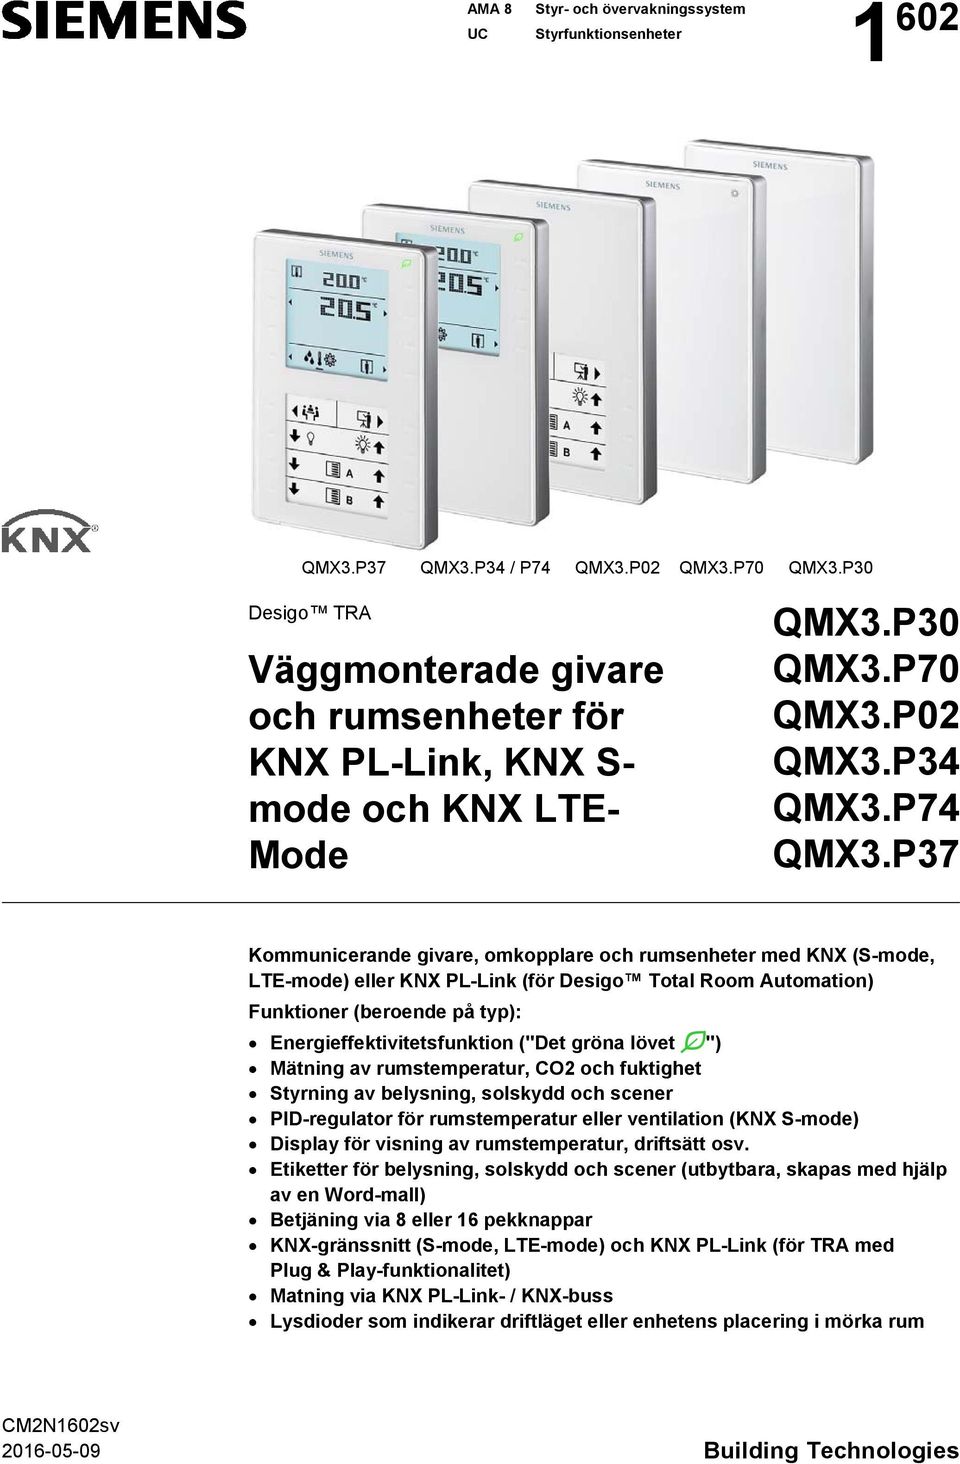 P37 Kommunicerande givare, omkopplare och rumsenheter med KNX (S-mode, LTE-mode) eller KNX PL-Link (för Desigo Total Room Automation) Funktioner (beroende på typ): Energieffektivitetsfunktion ("Det